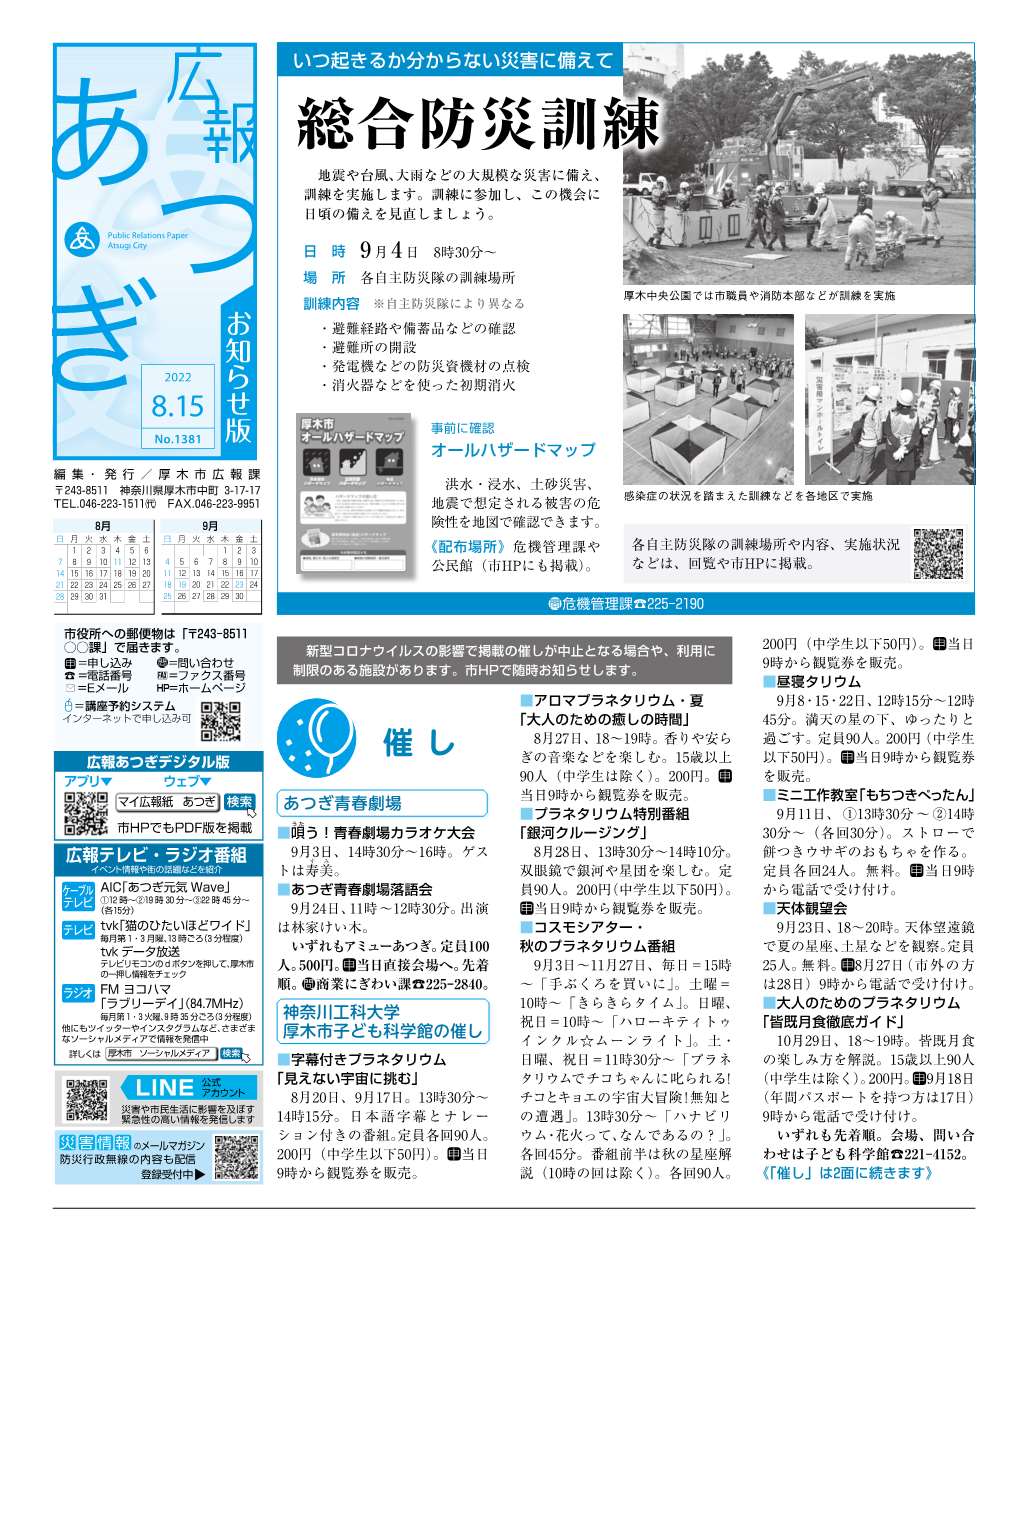 広報あつぎ8月15日号の1面のイメージ画像